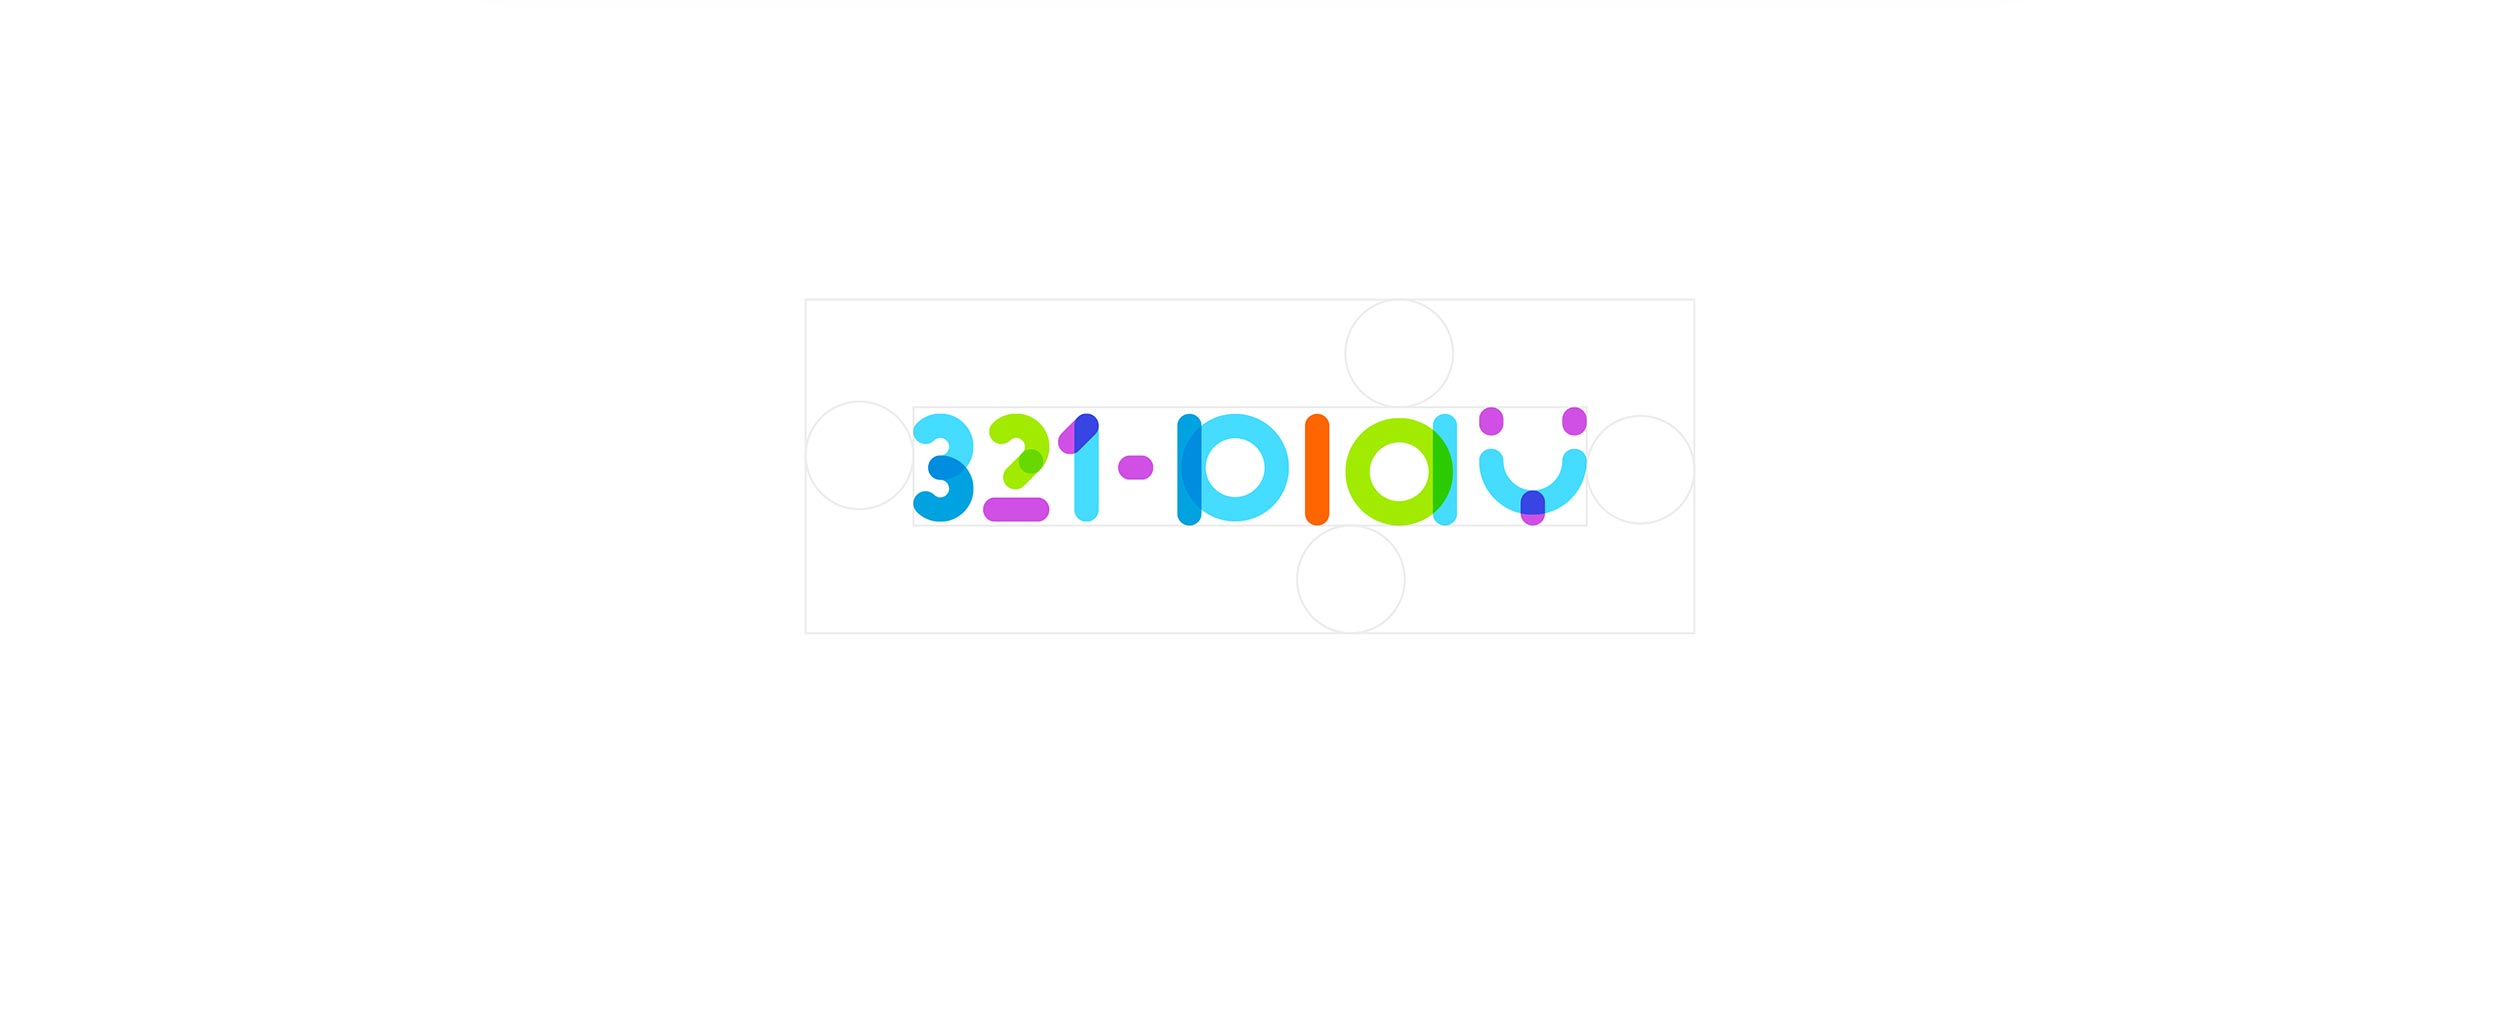 321-play-design-website-logo-branding-music-lessons-webdesign-screendesign-10